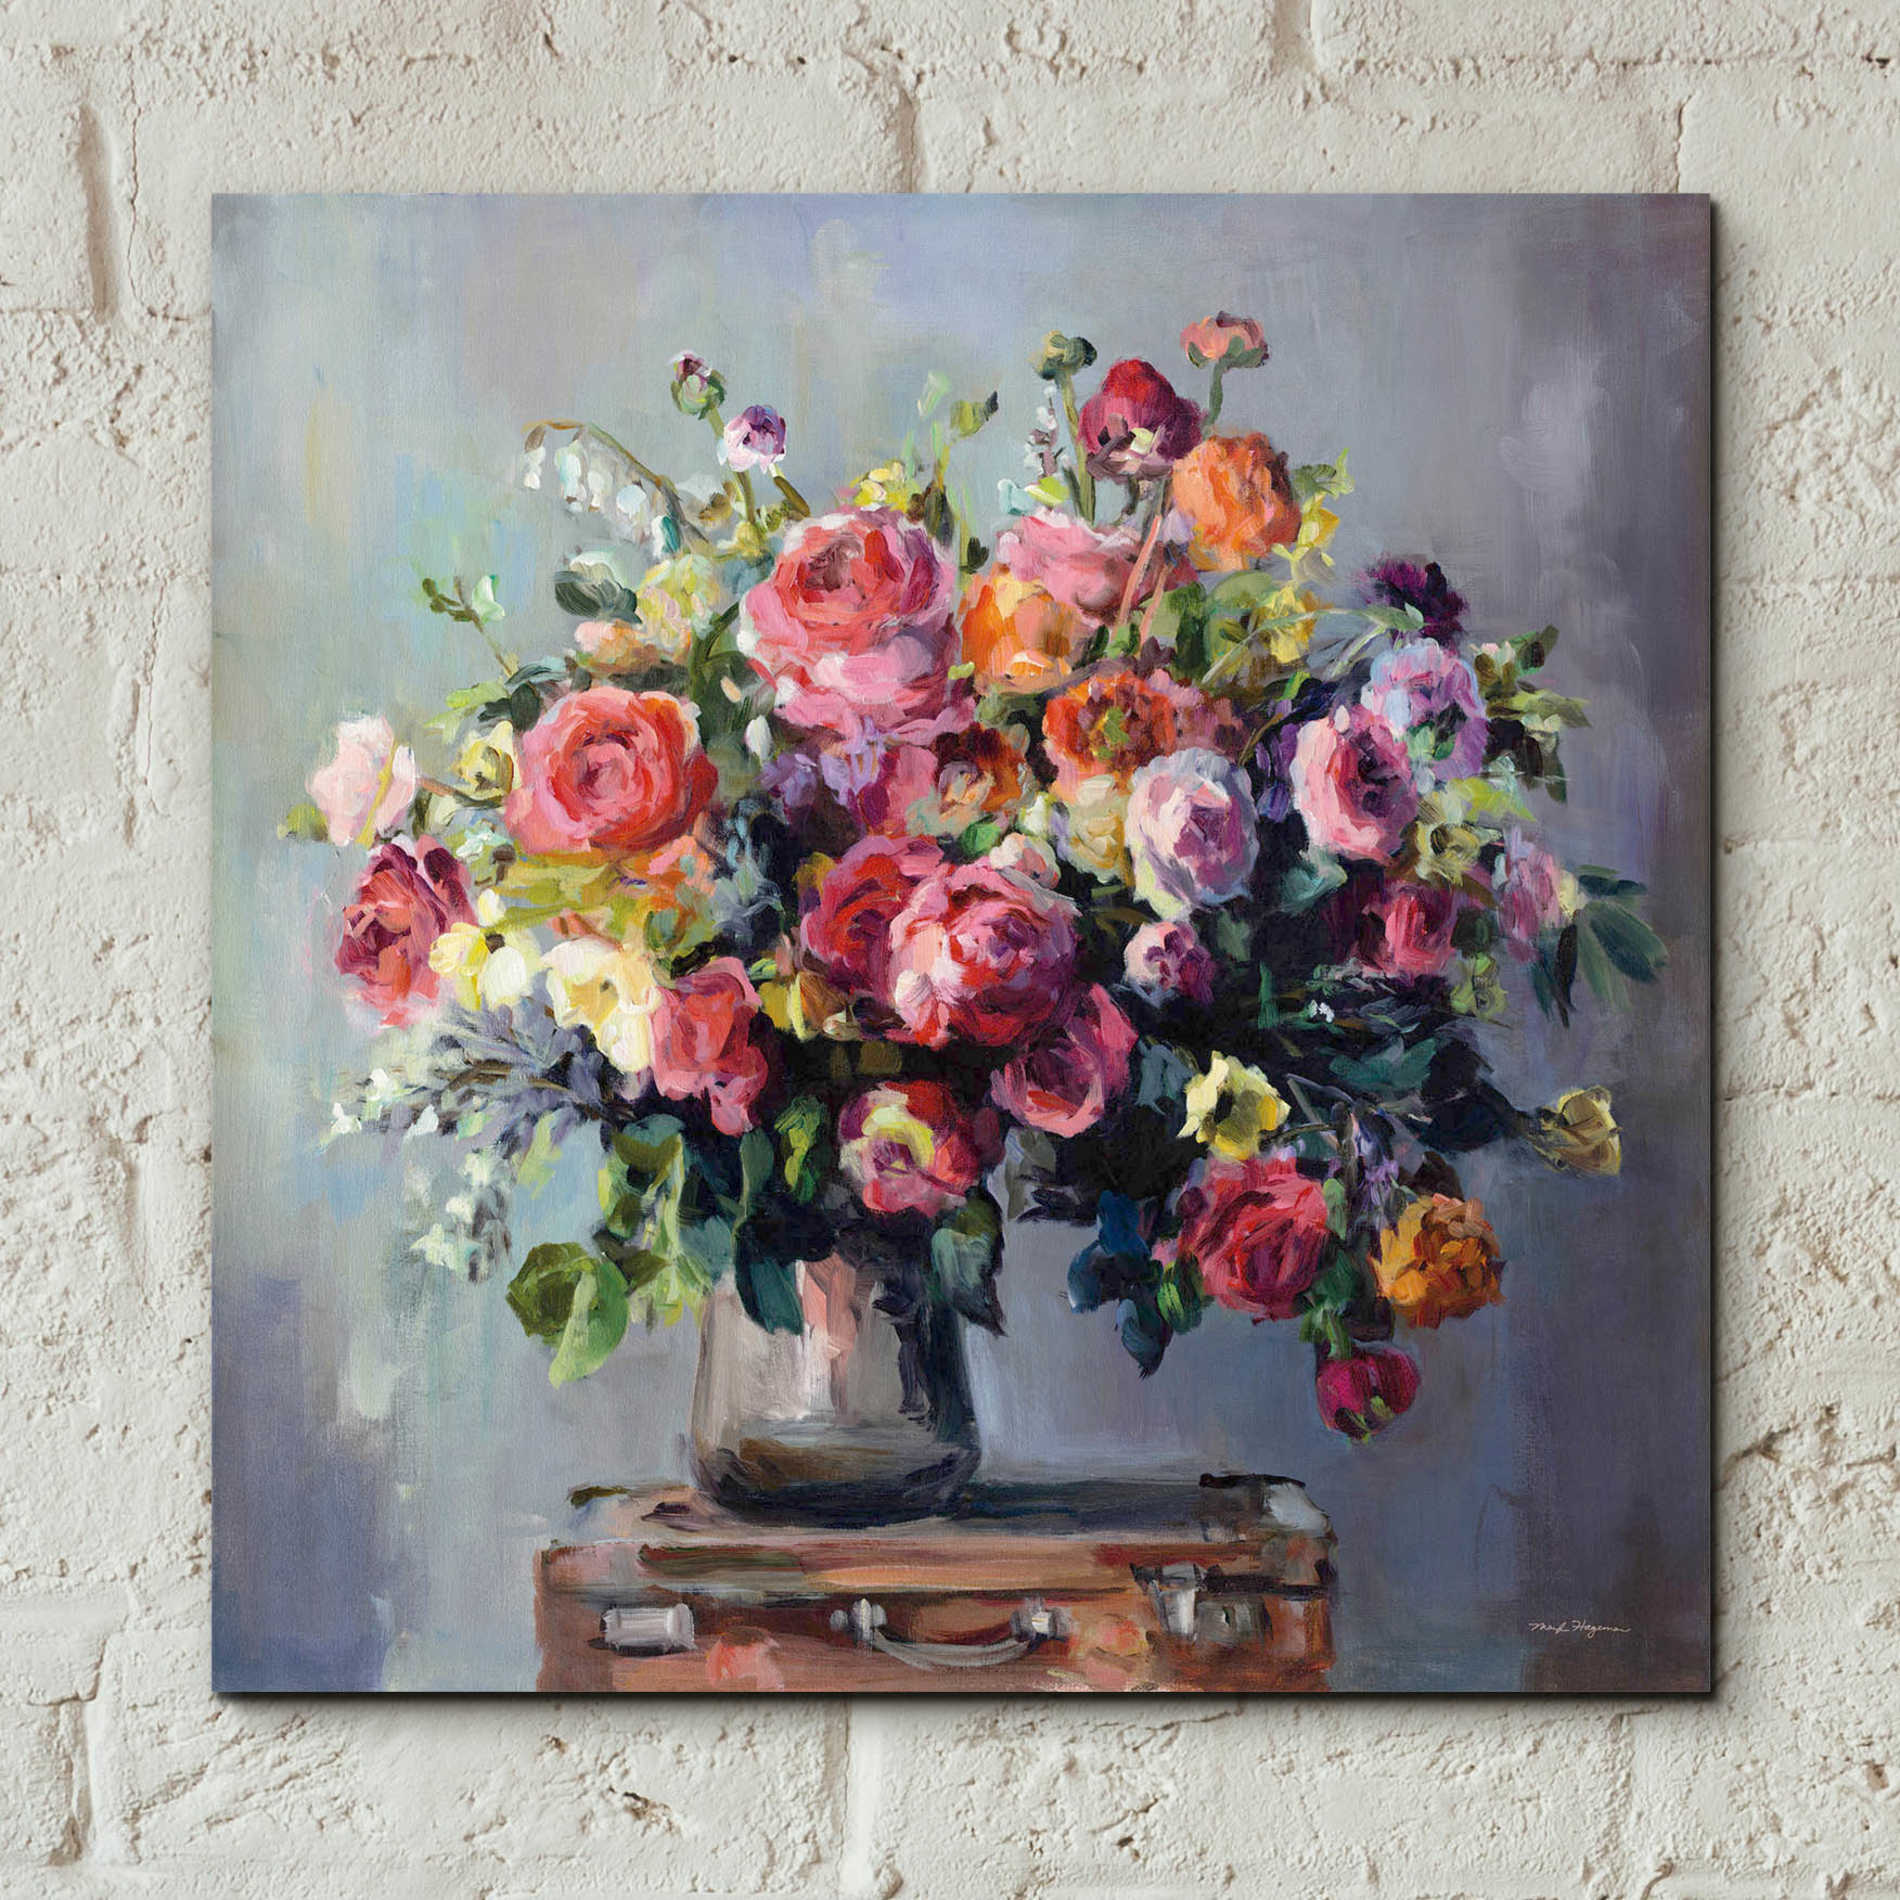 Epic Art 'Abundant Bouquet' by Marilyn Hageman, Acrylic Glass Wall Art,12x12